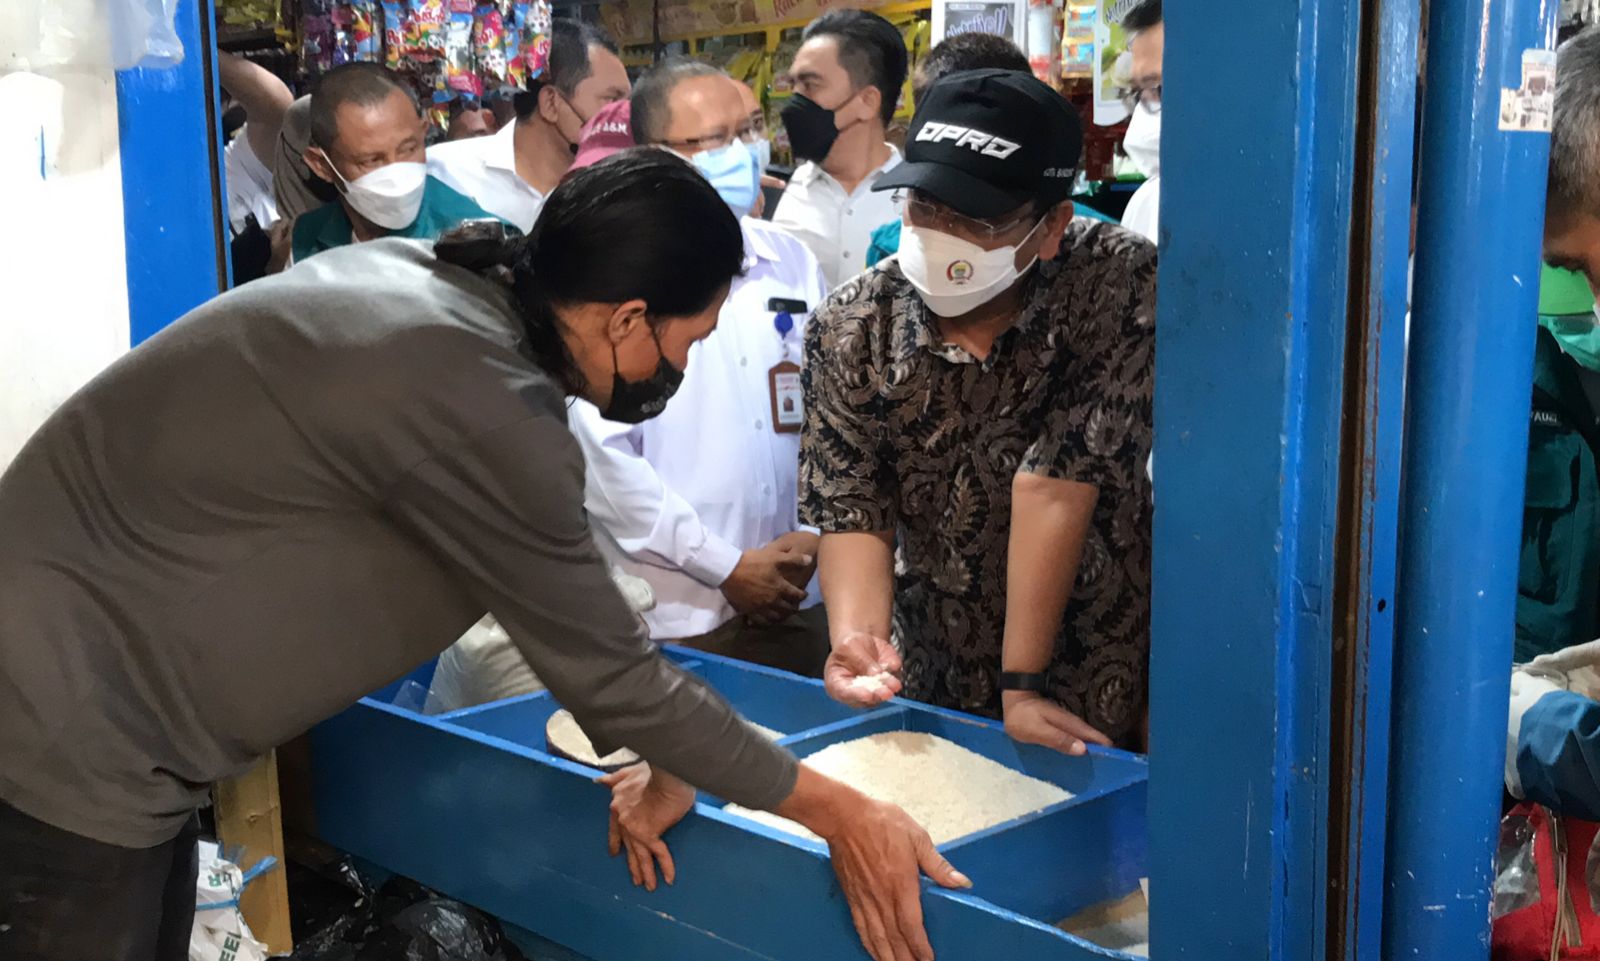 Jelang Ramadan Harga Sembako Naik, Ketua DPRD Kota Bandung: Pemkot Harus Pastikan Stok Aman dan Rajin Operasi 